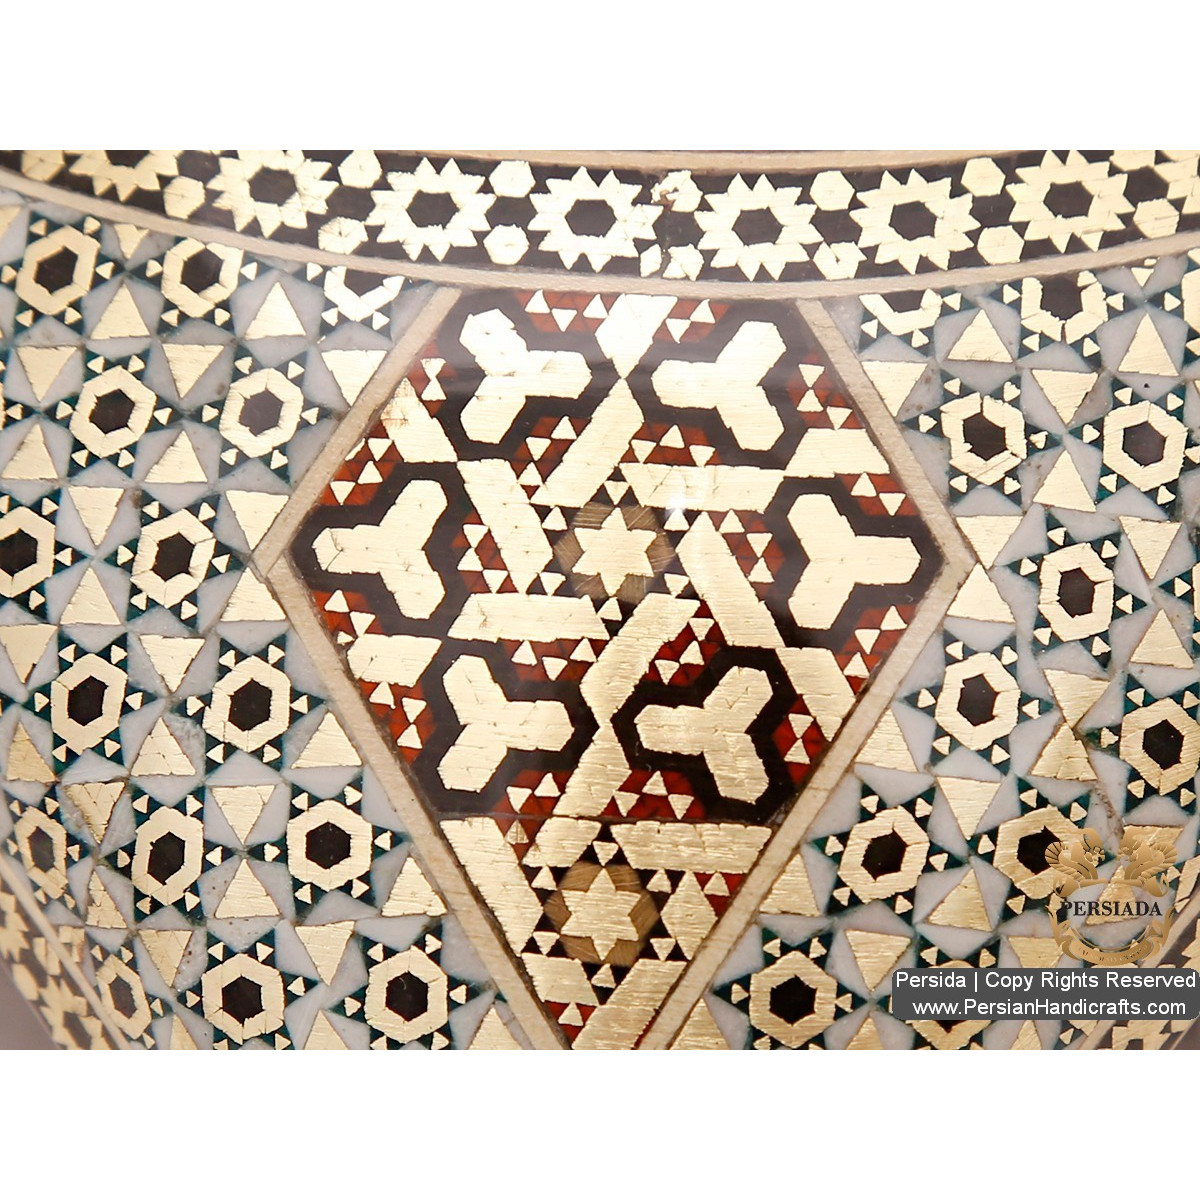 Iranian Arch Look Sugar Bowl | Khatam Marquetry | HKH520 Persiada